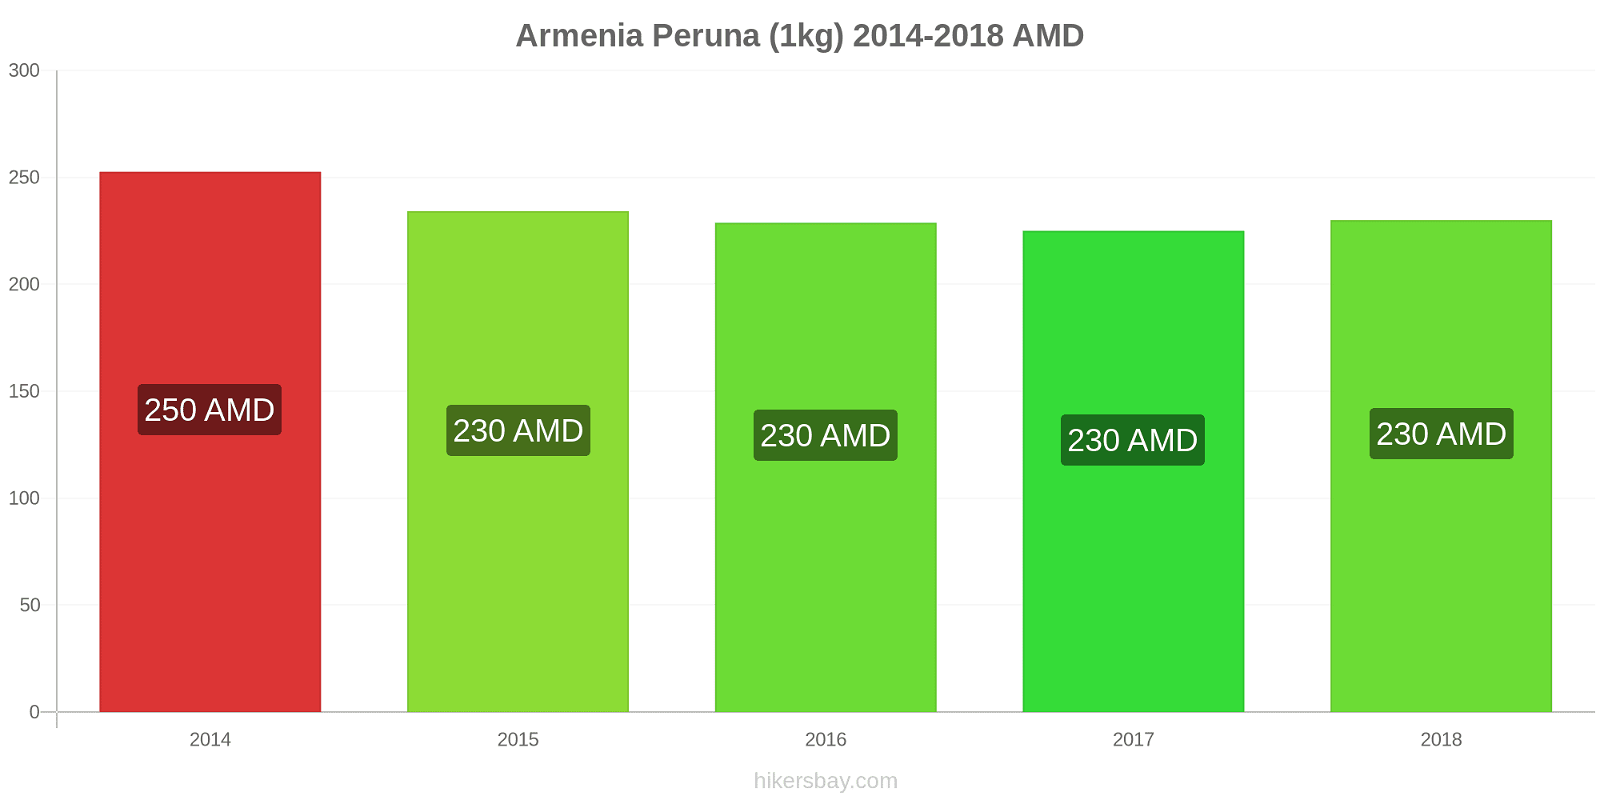 Armenia hintojen muutokset Peruna (1kg) hikersbay.com